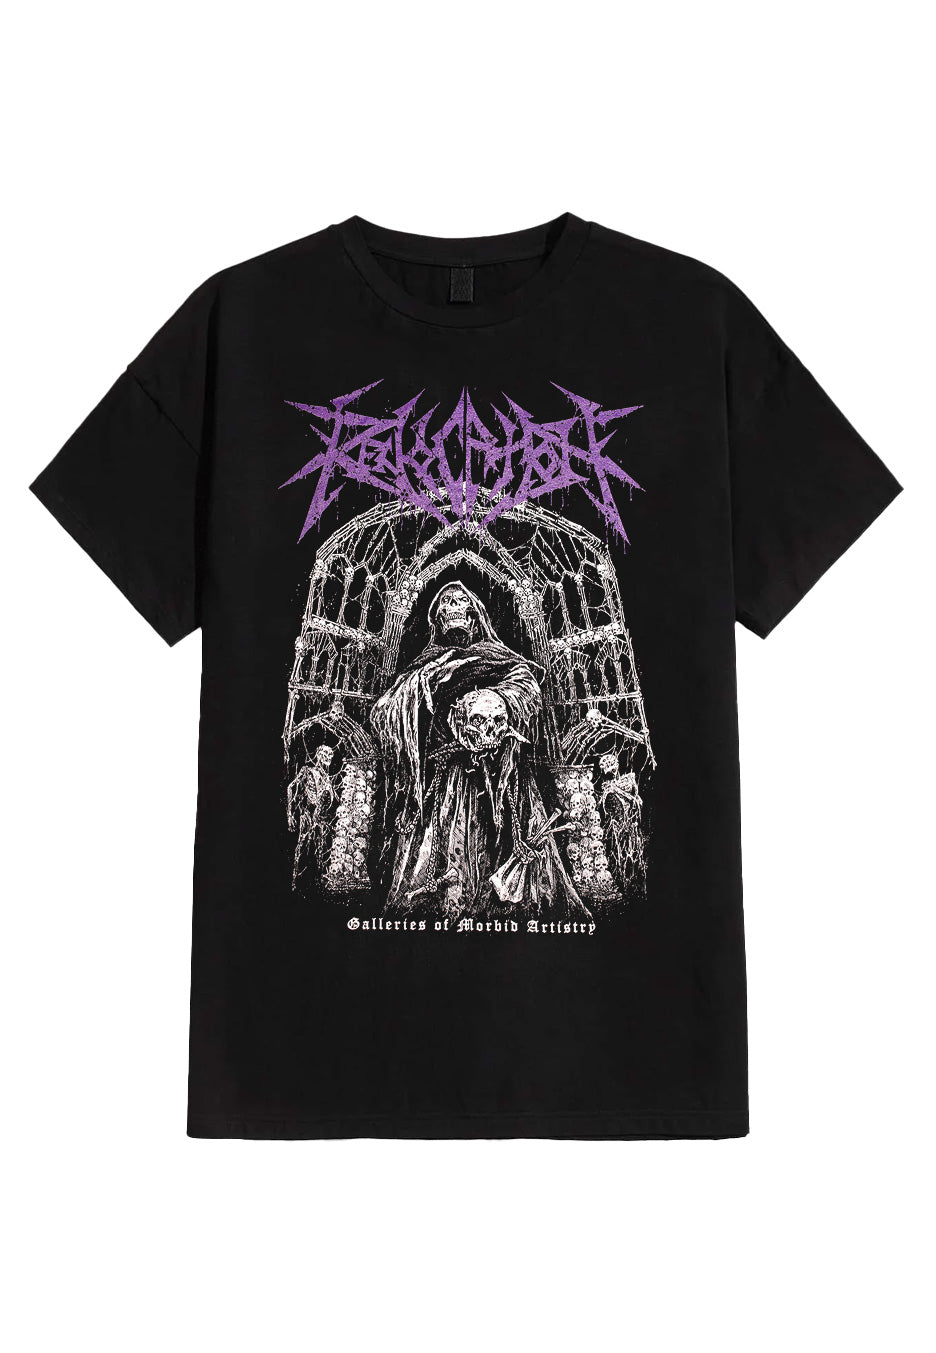 Revocation - Galleries Of Morbid Artistry - T-Shirt